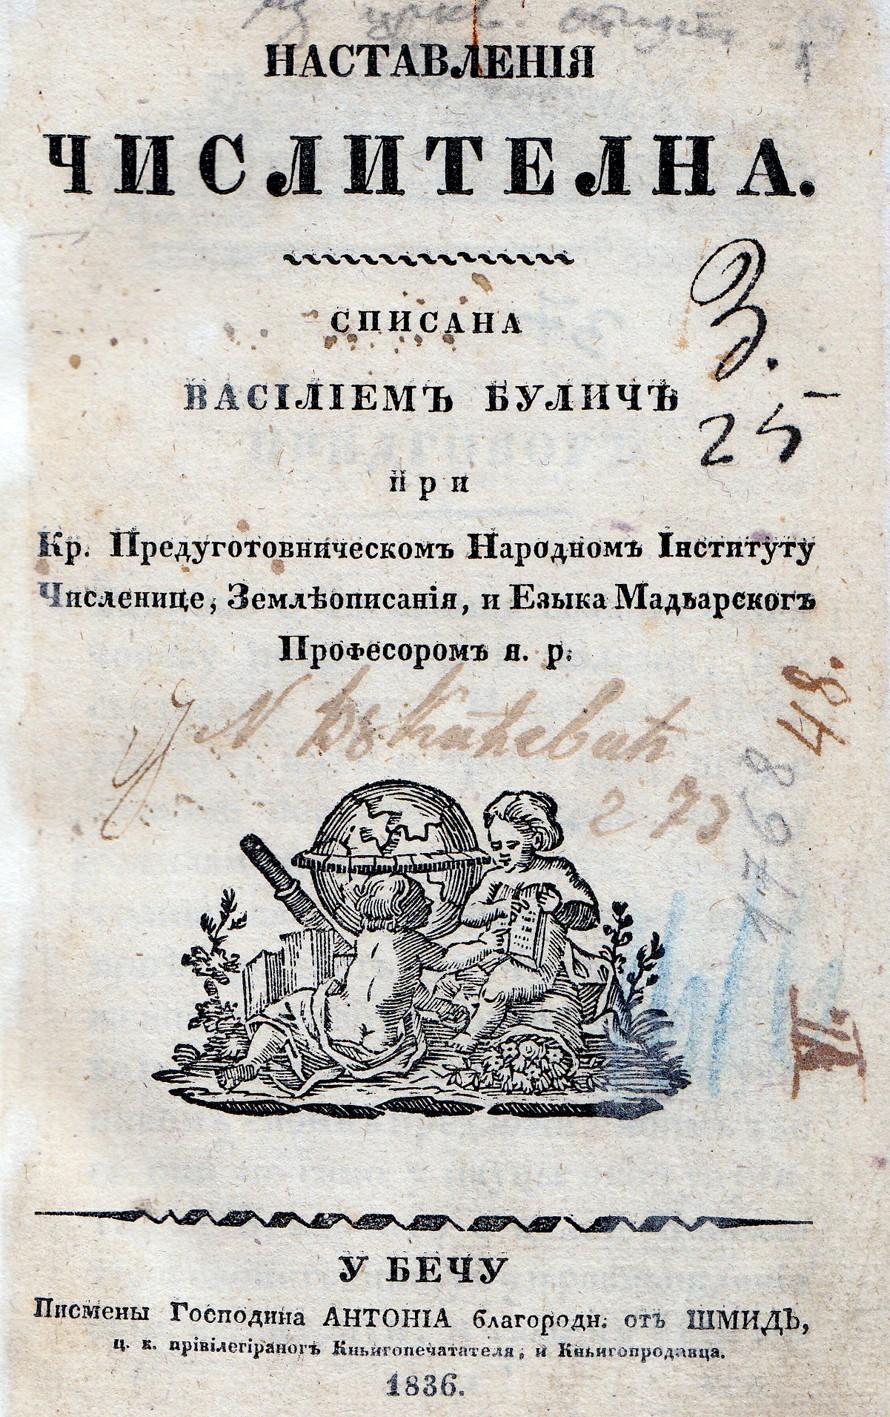 Слика 4: Наставленија чистлена, Василија Булића Када је 1815. г.